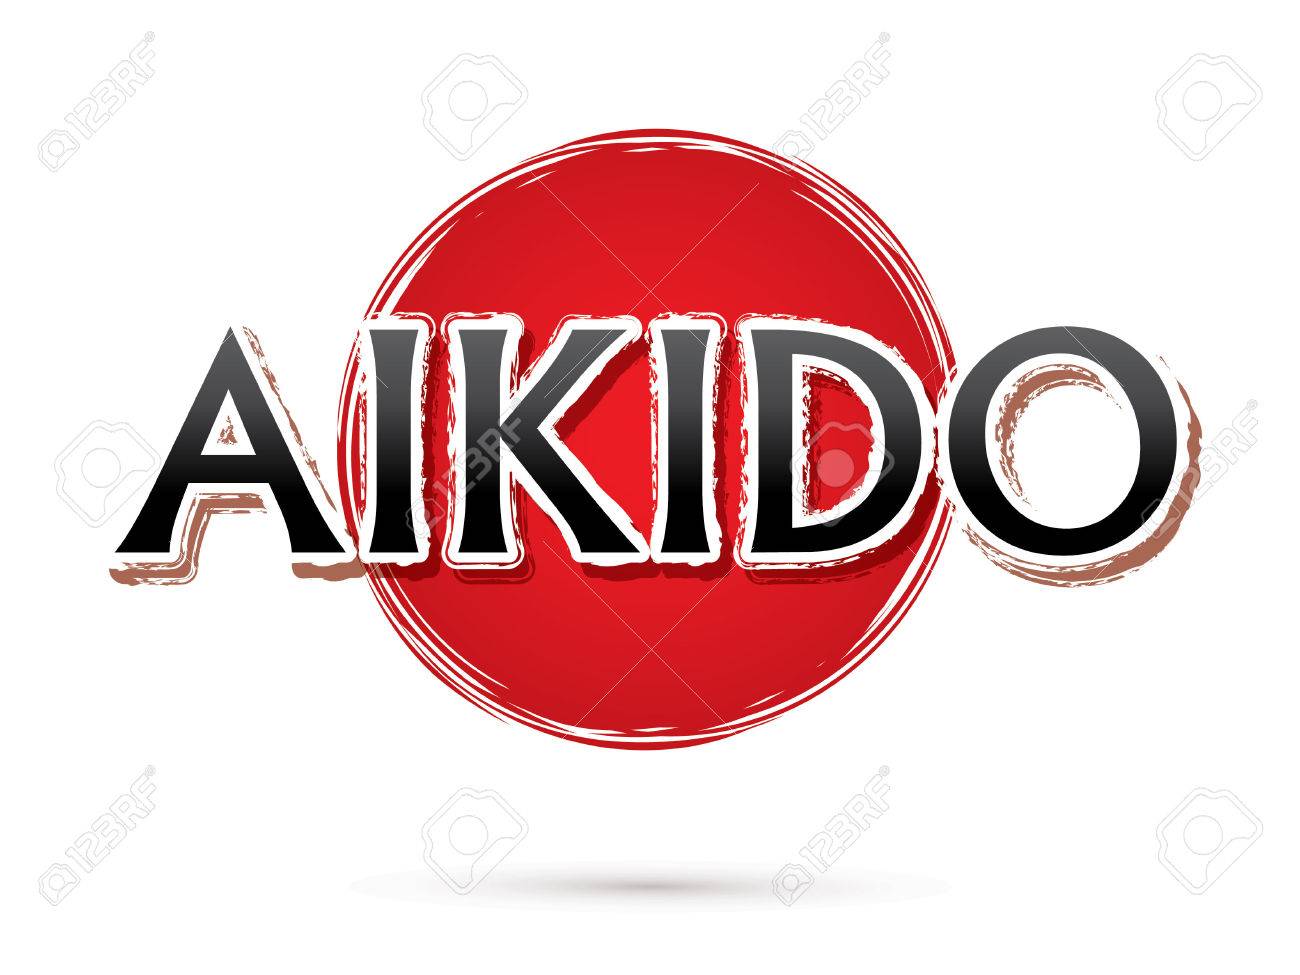 aikido logo.jpg